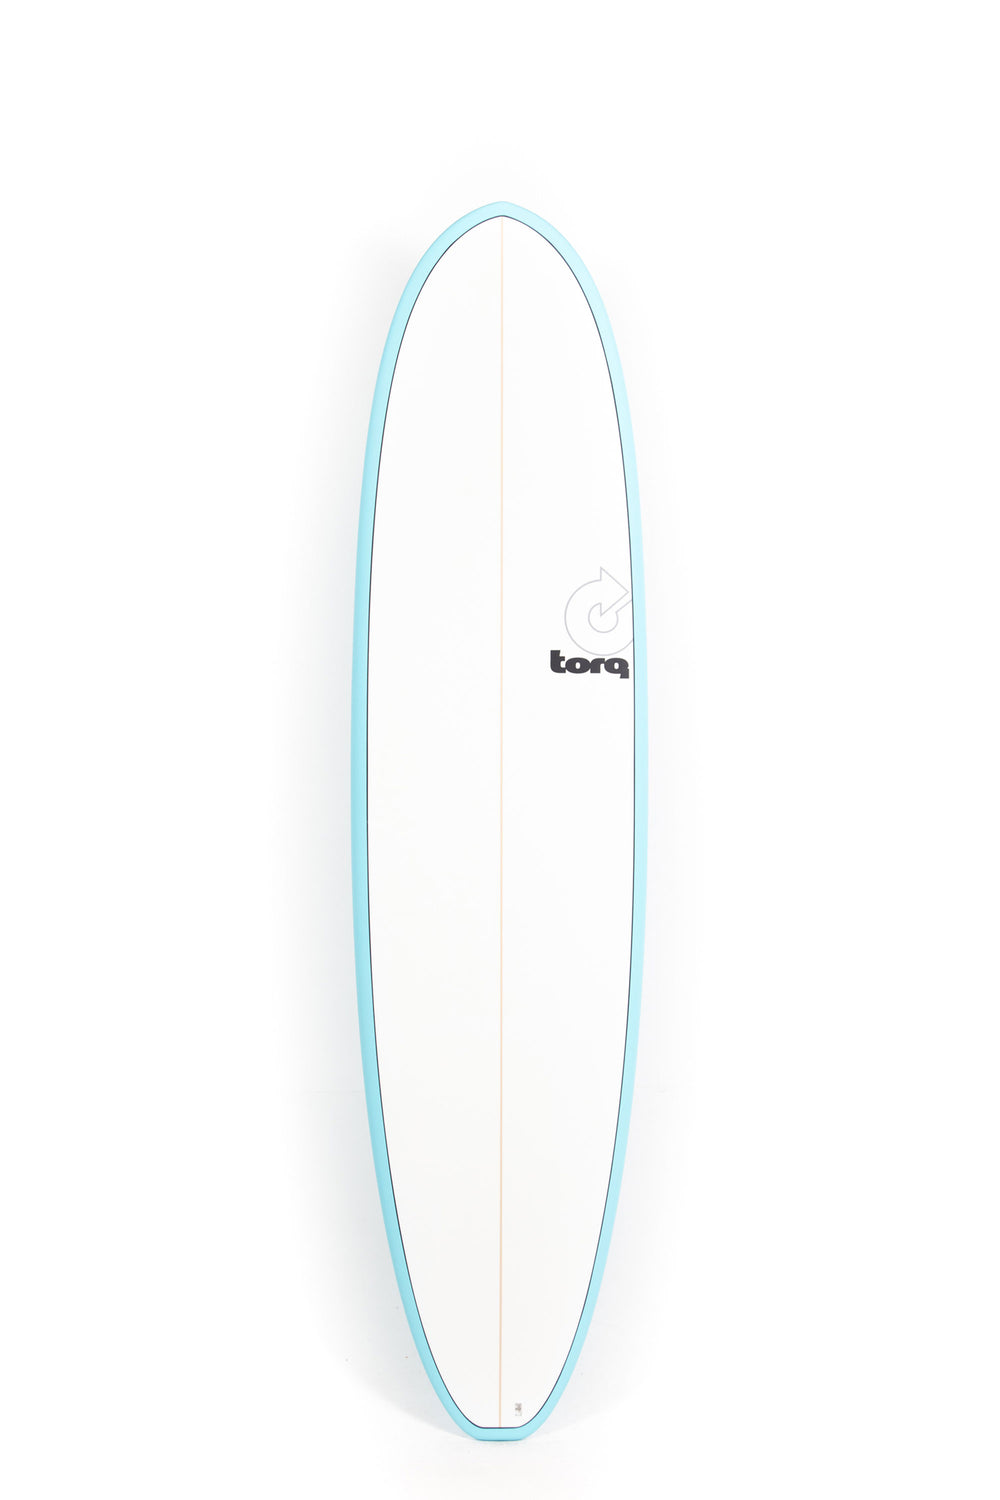 Pukas-Surf-Shop-Torq-Surfboards-V_-7_8_-blue